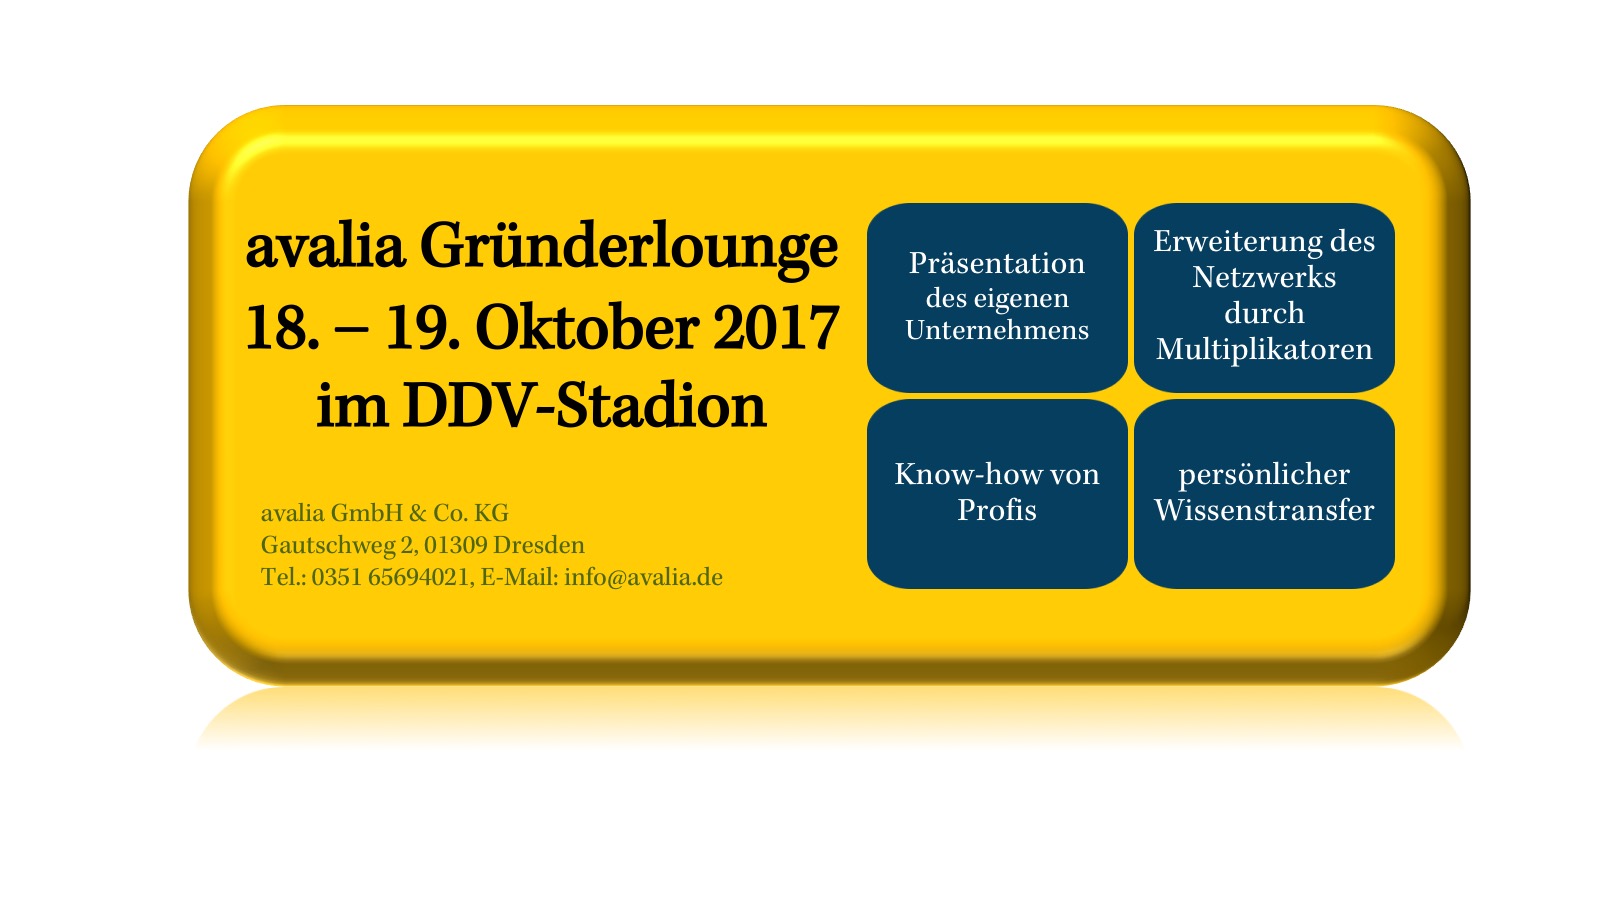 avalia Gründerlounge am 18. bis 19. Oktober 2017